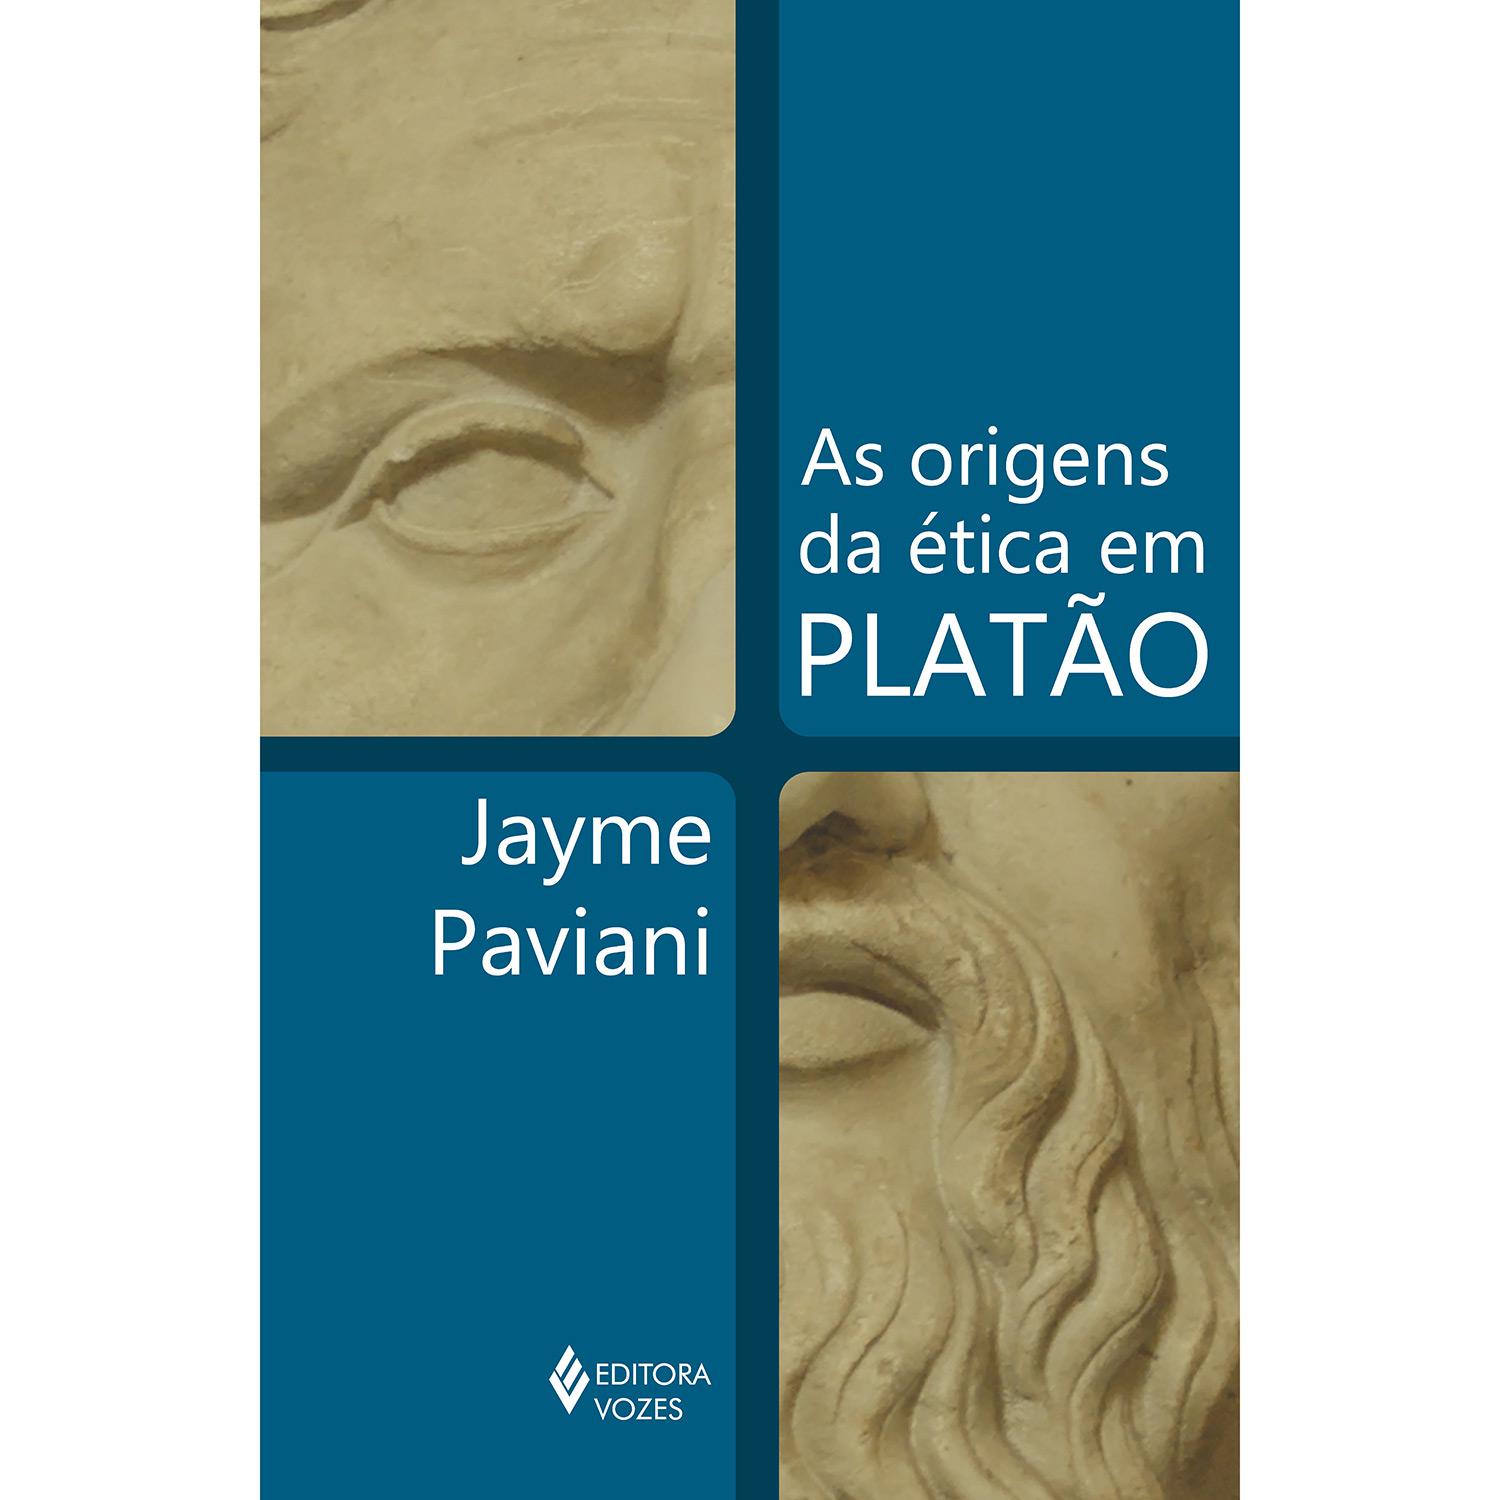 Livro - As Origens da Ética em Platão é bom? Vale a pena?